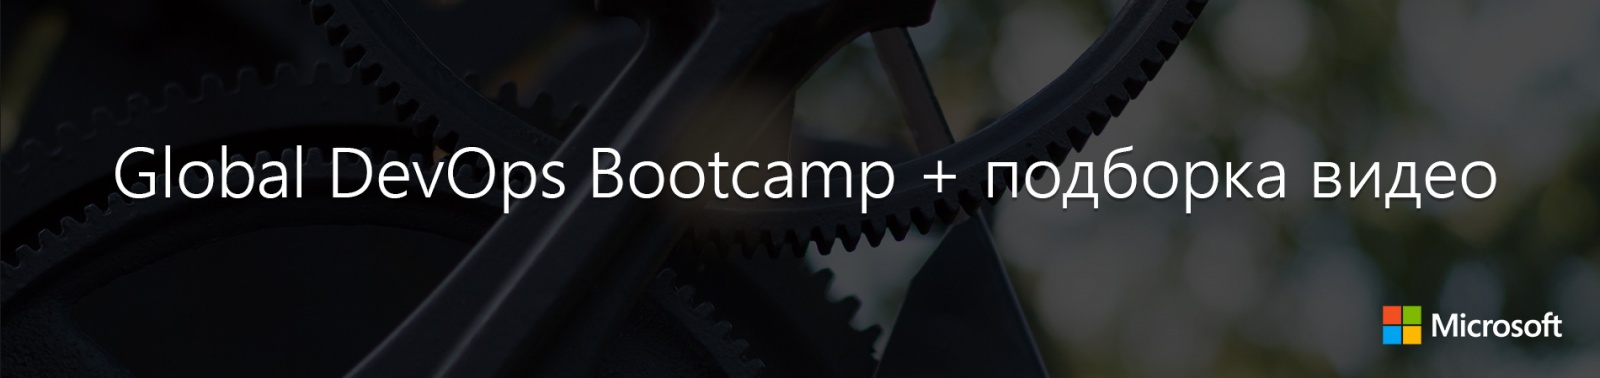 Global DevOps Bootcamp + подборка видео - 1